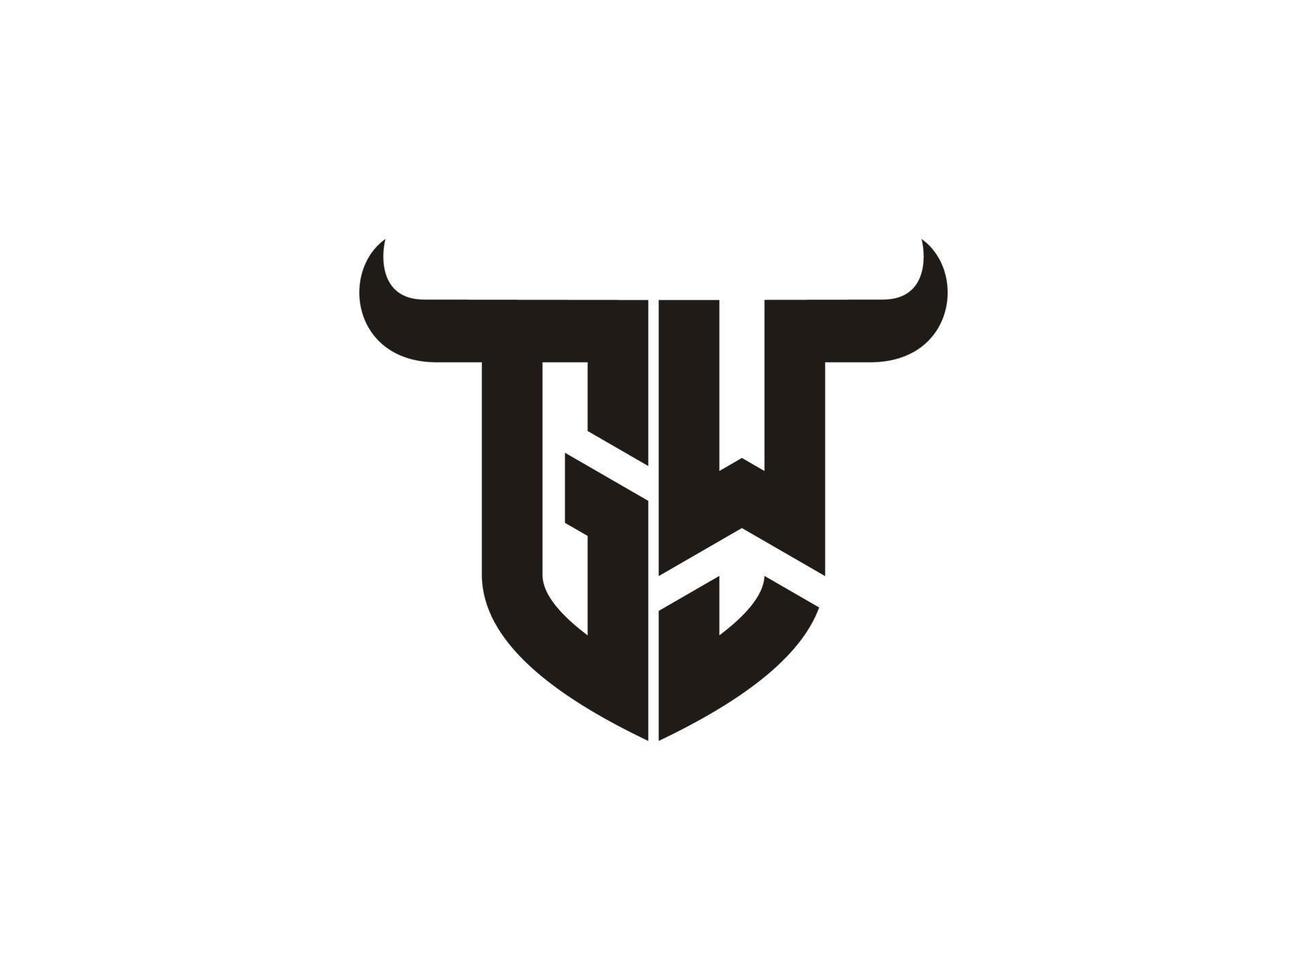 eerste gw stier logo ontwerp. vector